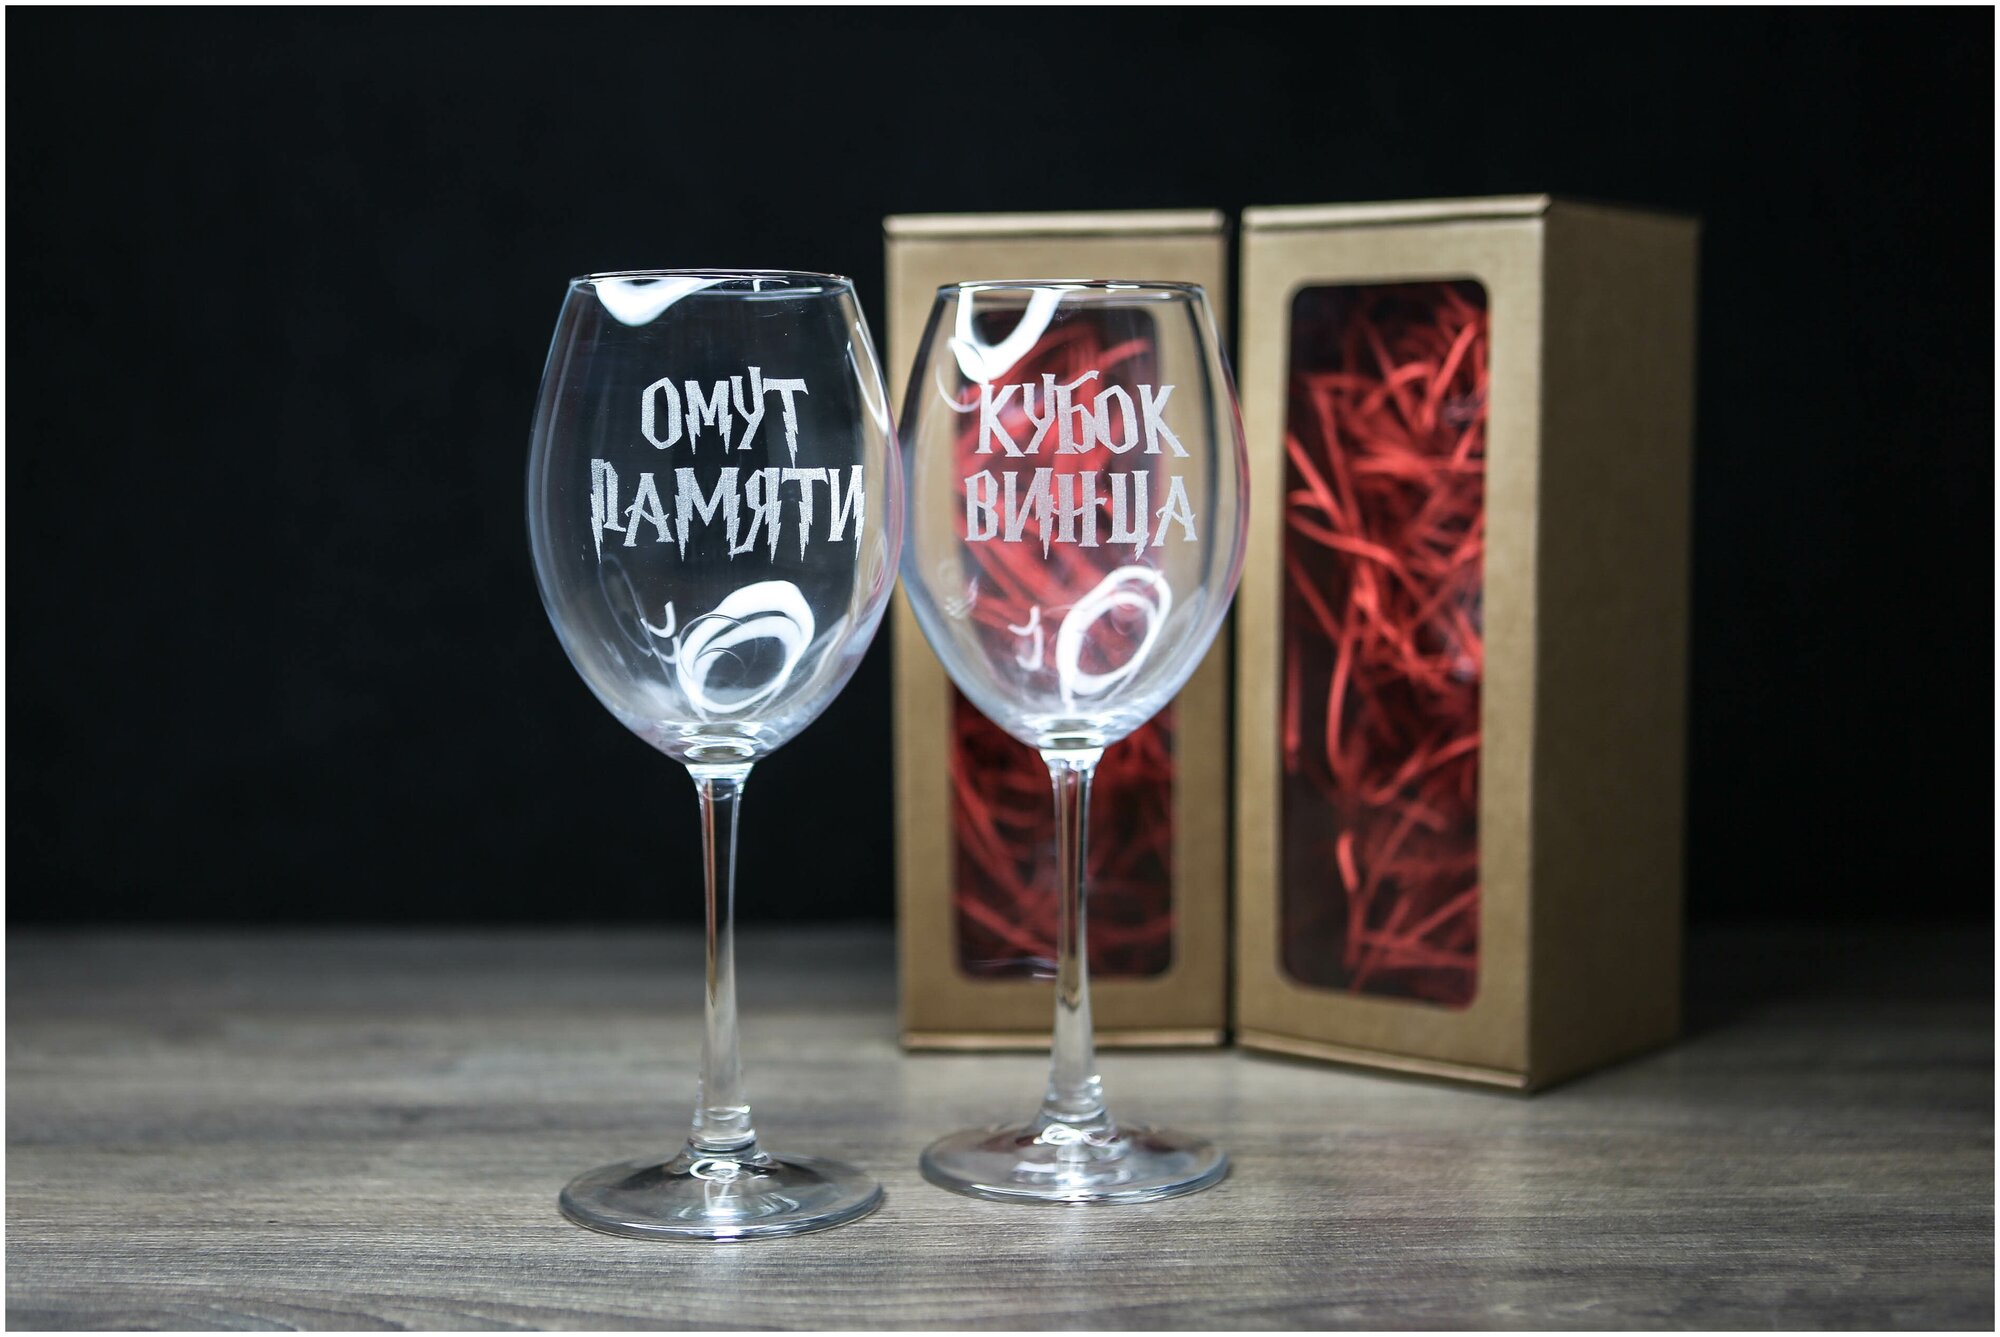 Парные бокалы для вина с гравировкой для подруг / подарок подруге / фужеры с надписью кубок винца и омут памяти